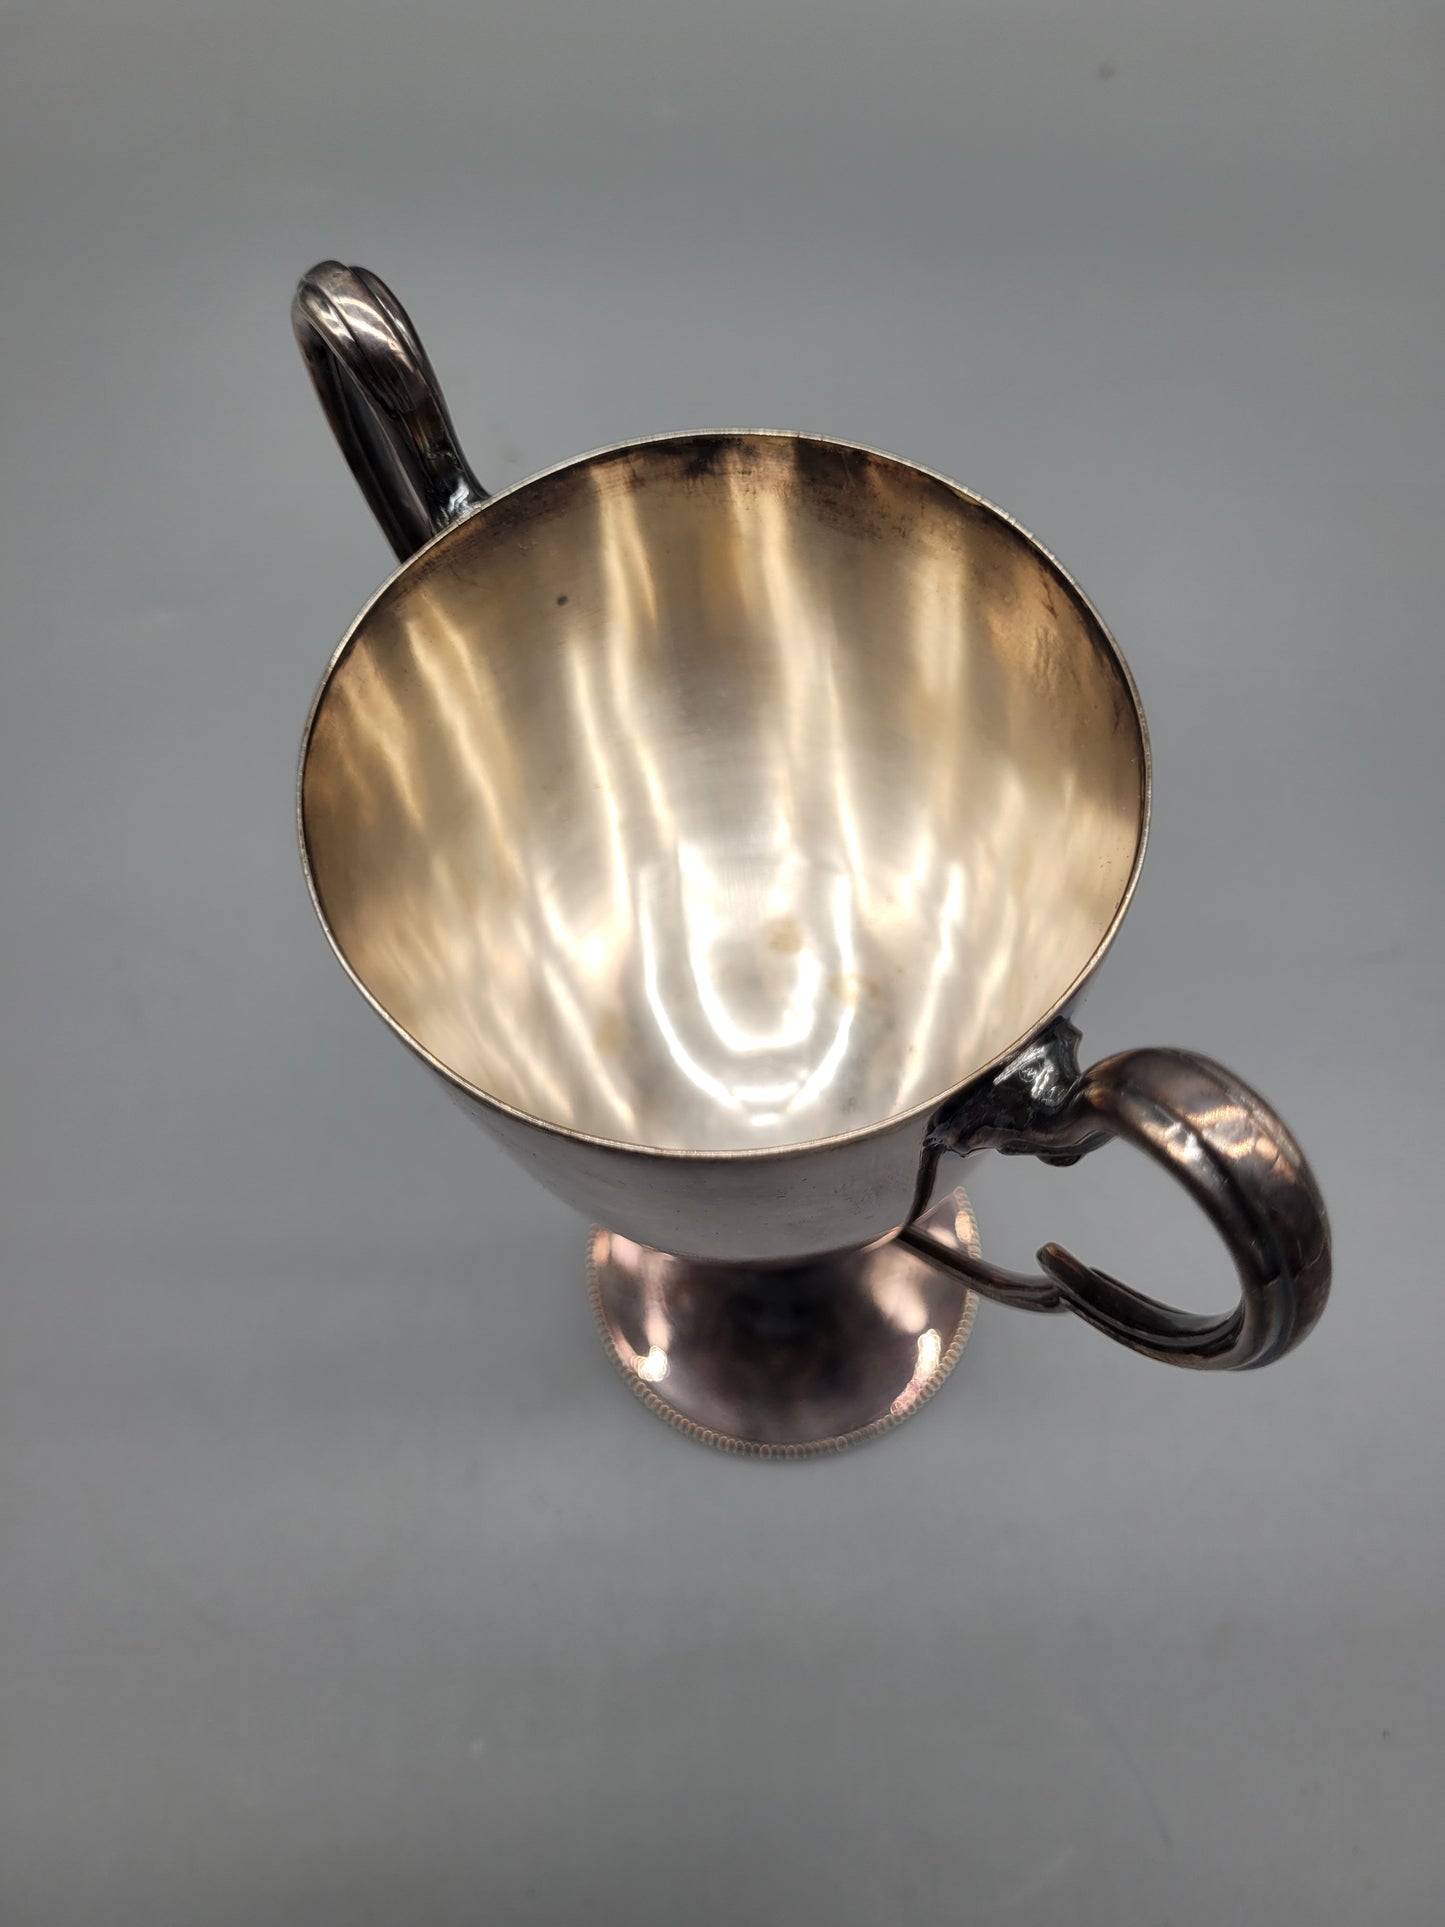 Meistermarke Mappin & Webb, London Sheffield Art Deco Silber Pokal, Kelch